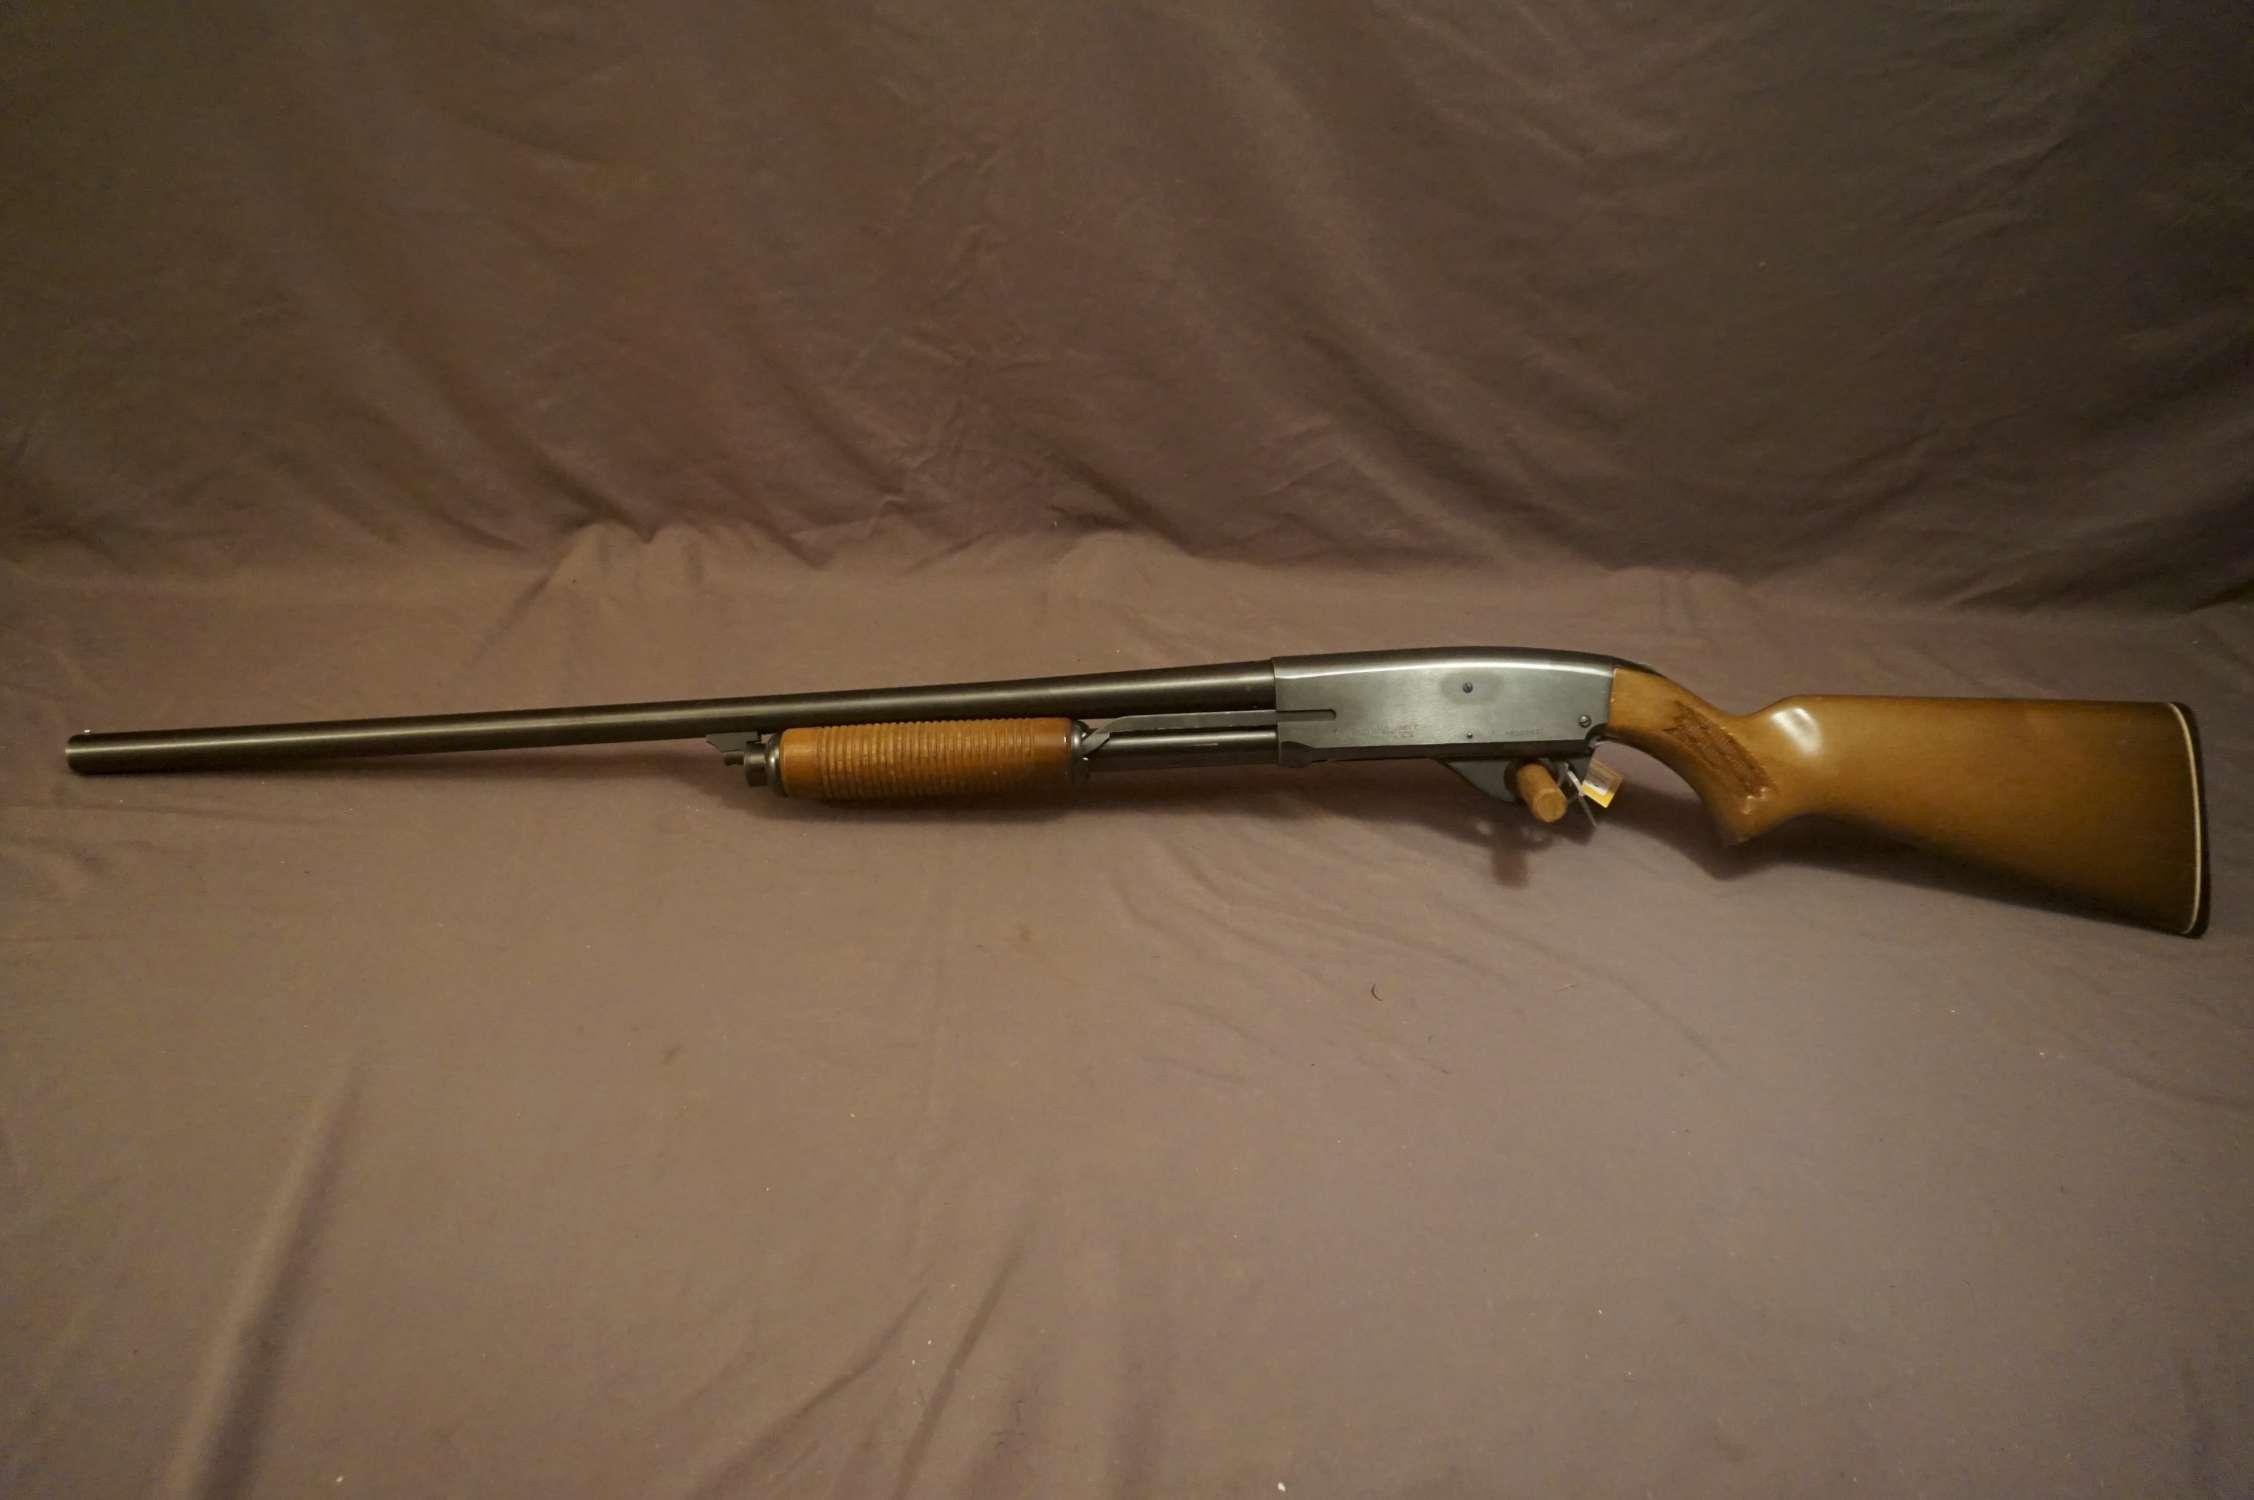 Foremost (Savage) M. 6670 Series C 12ga Pump Shotgun